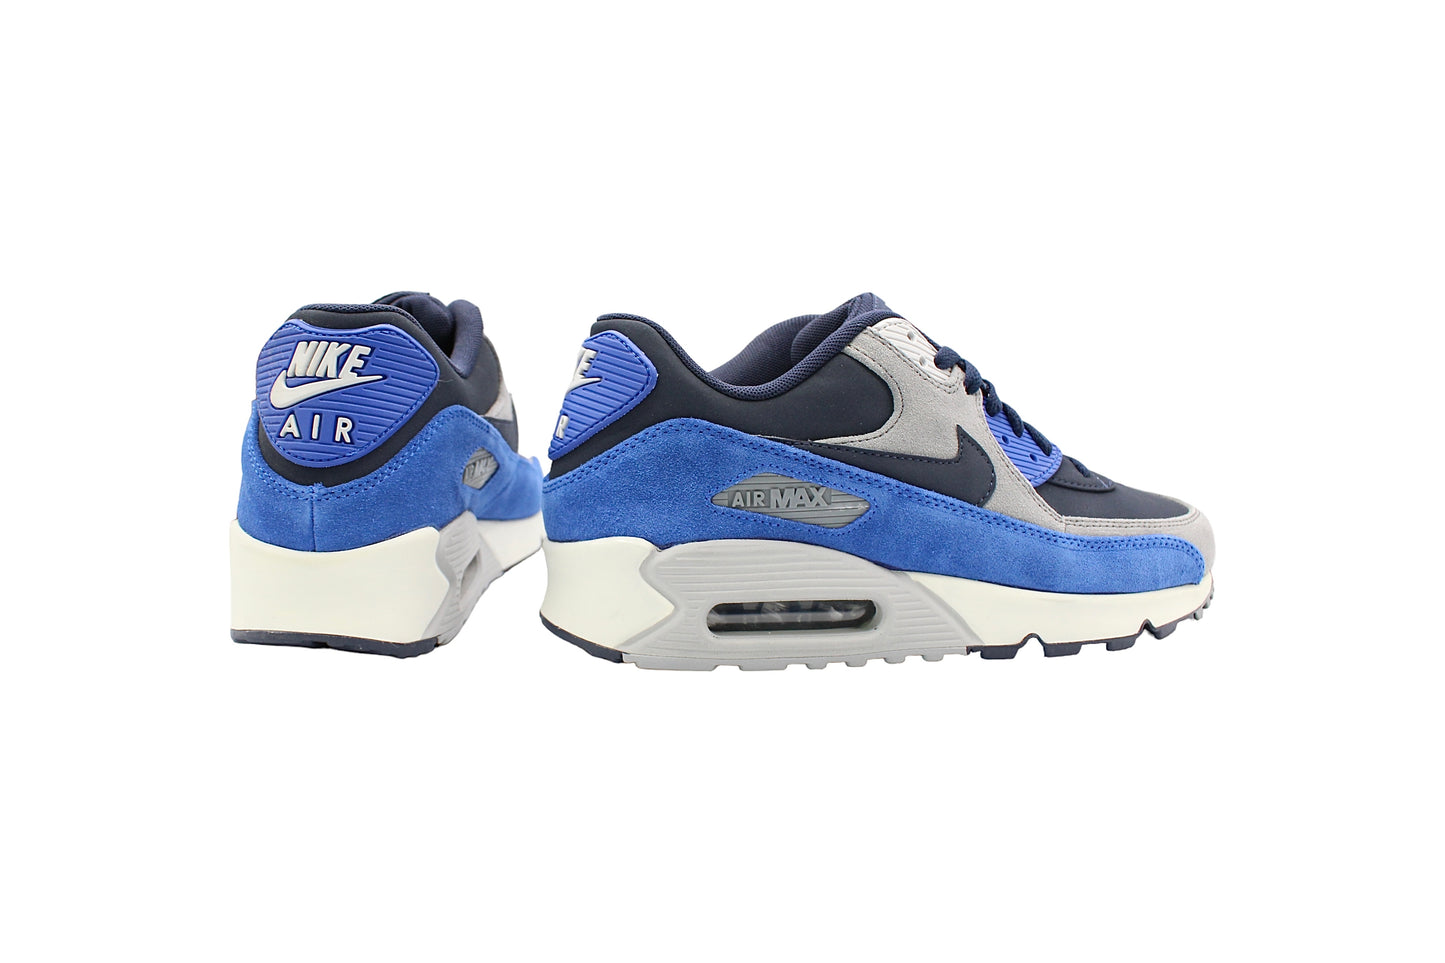 Nike Air Max 90 LTR Premium ‘Obsidean Blue Suede’